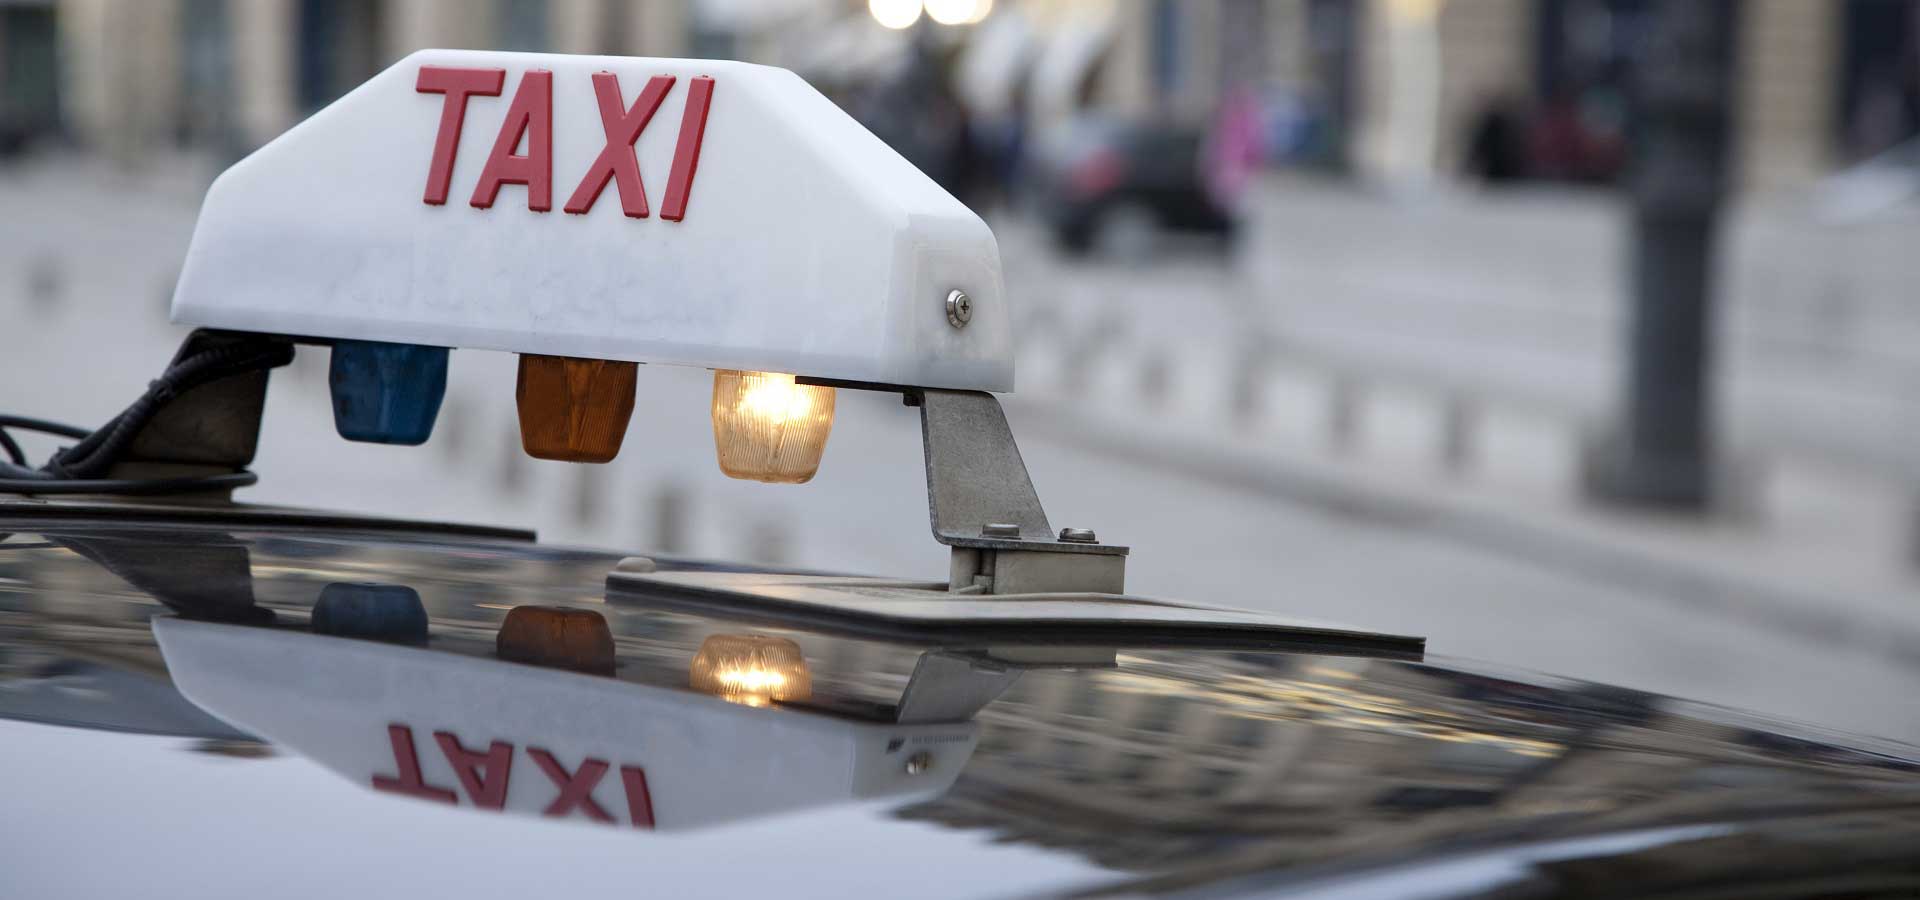 Taxis : une activité historique toujours moderne